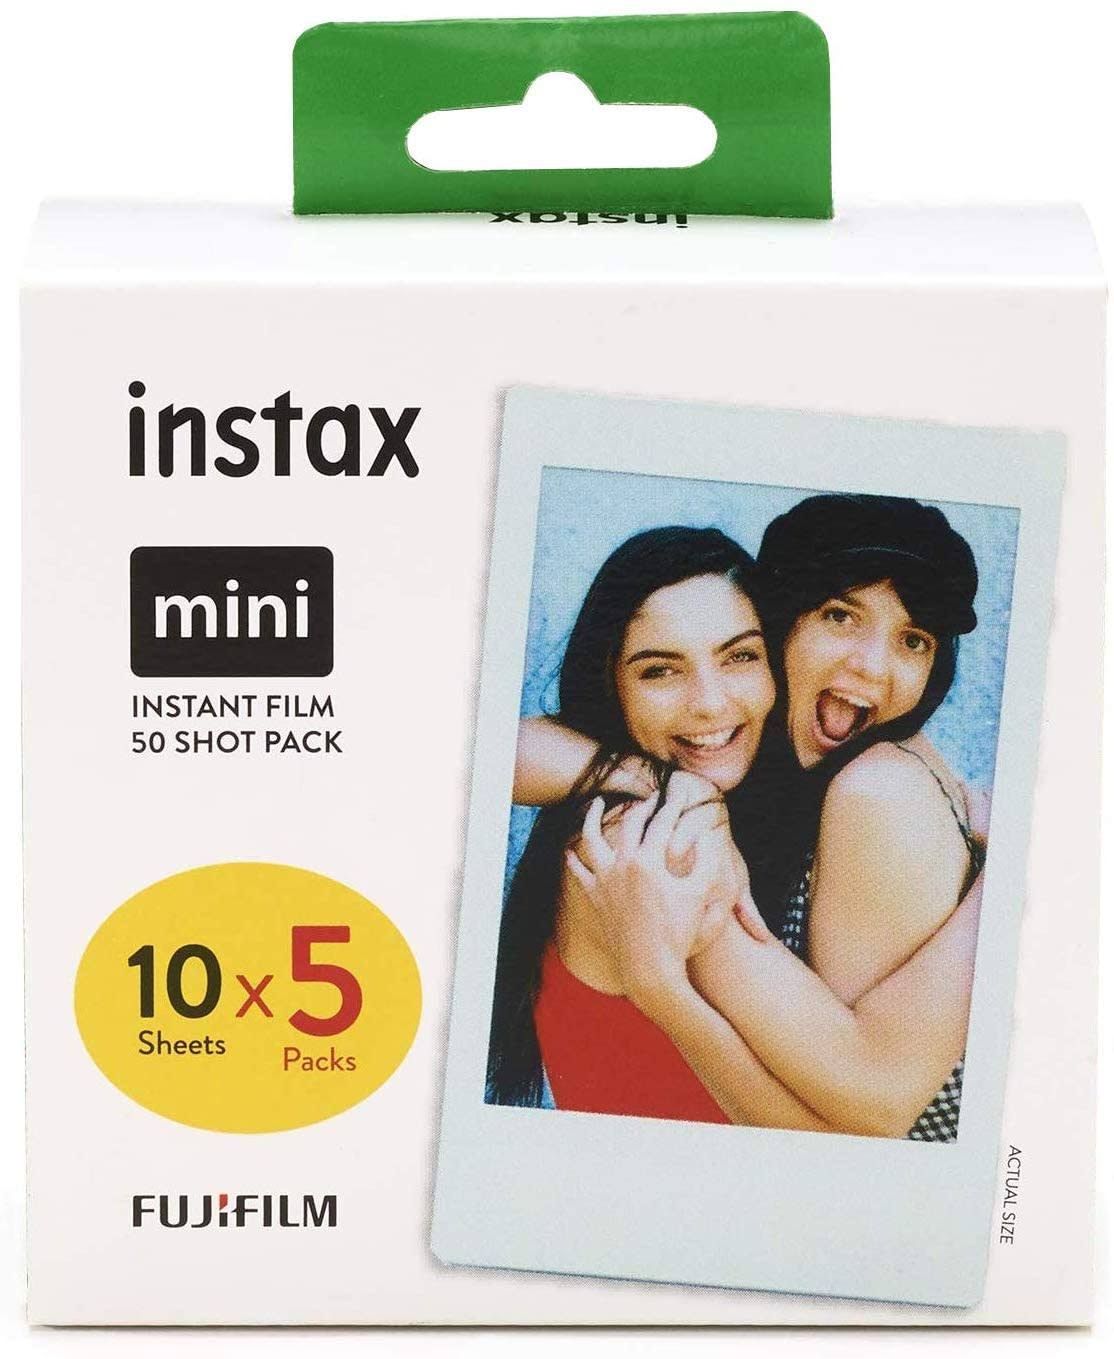 Fujifilm Instax Mini Film - 50 Shot Pack